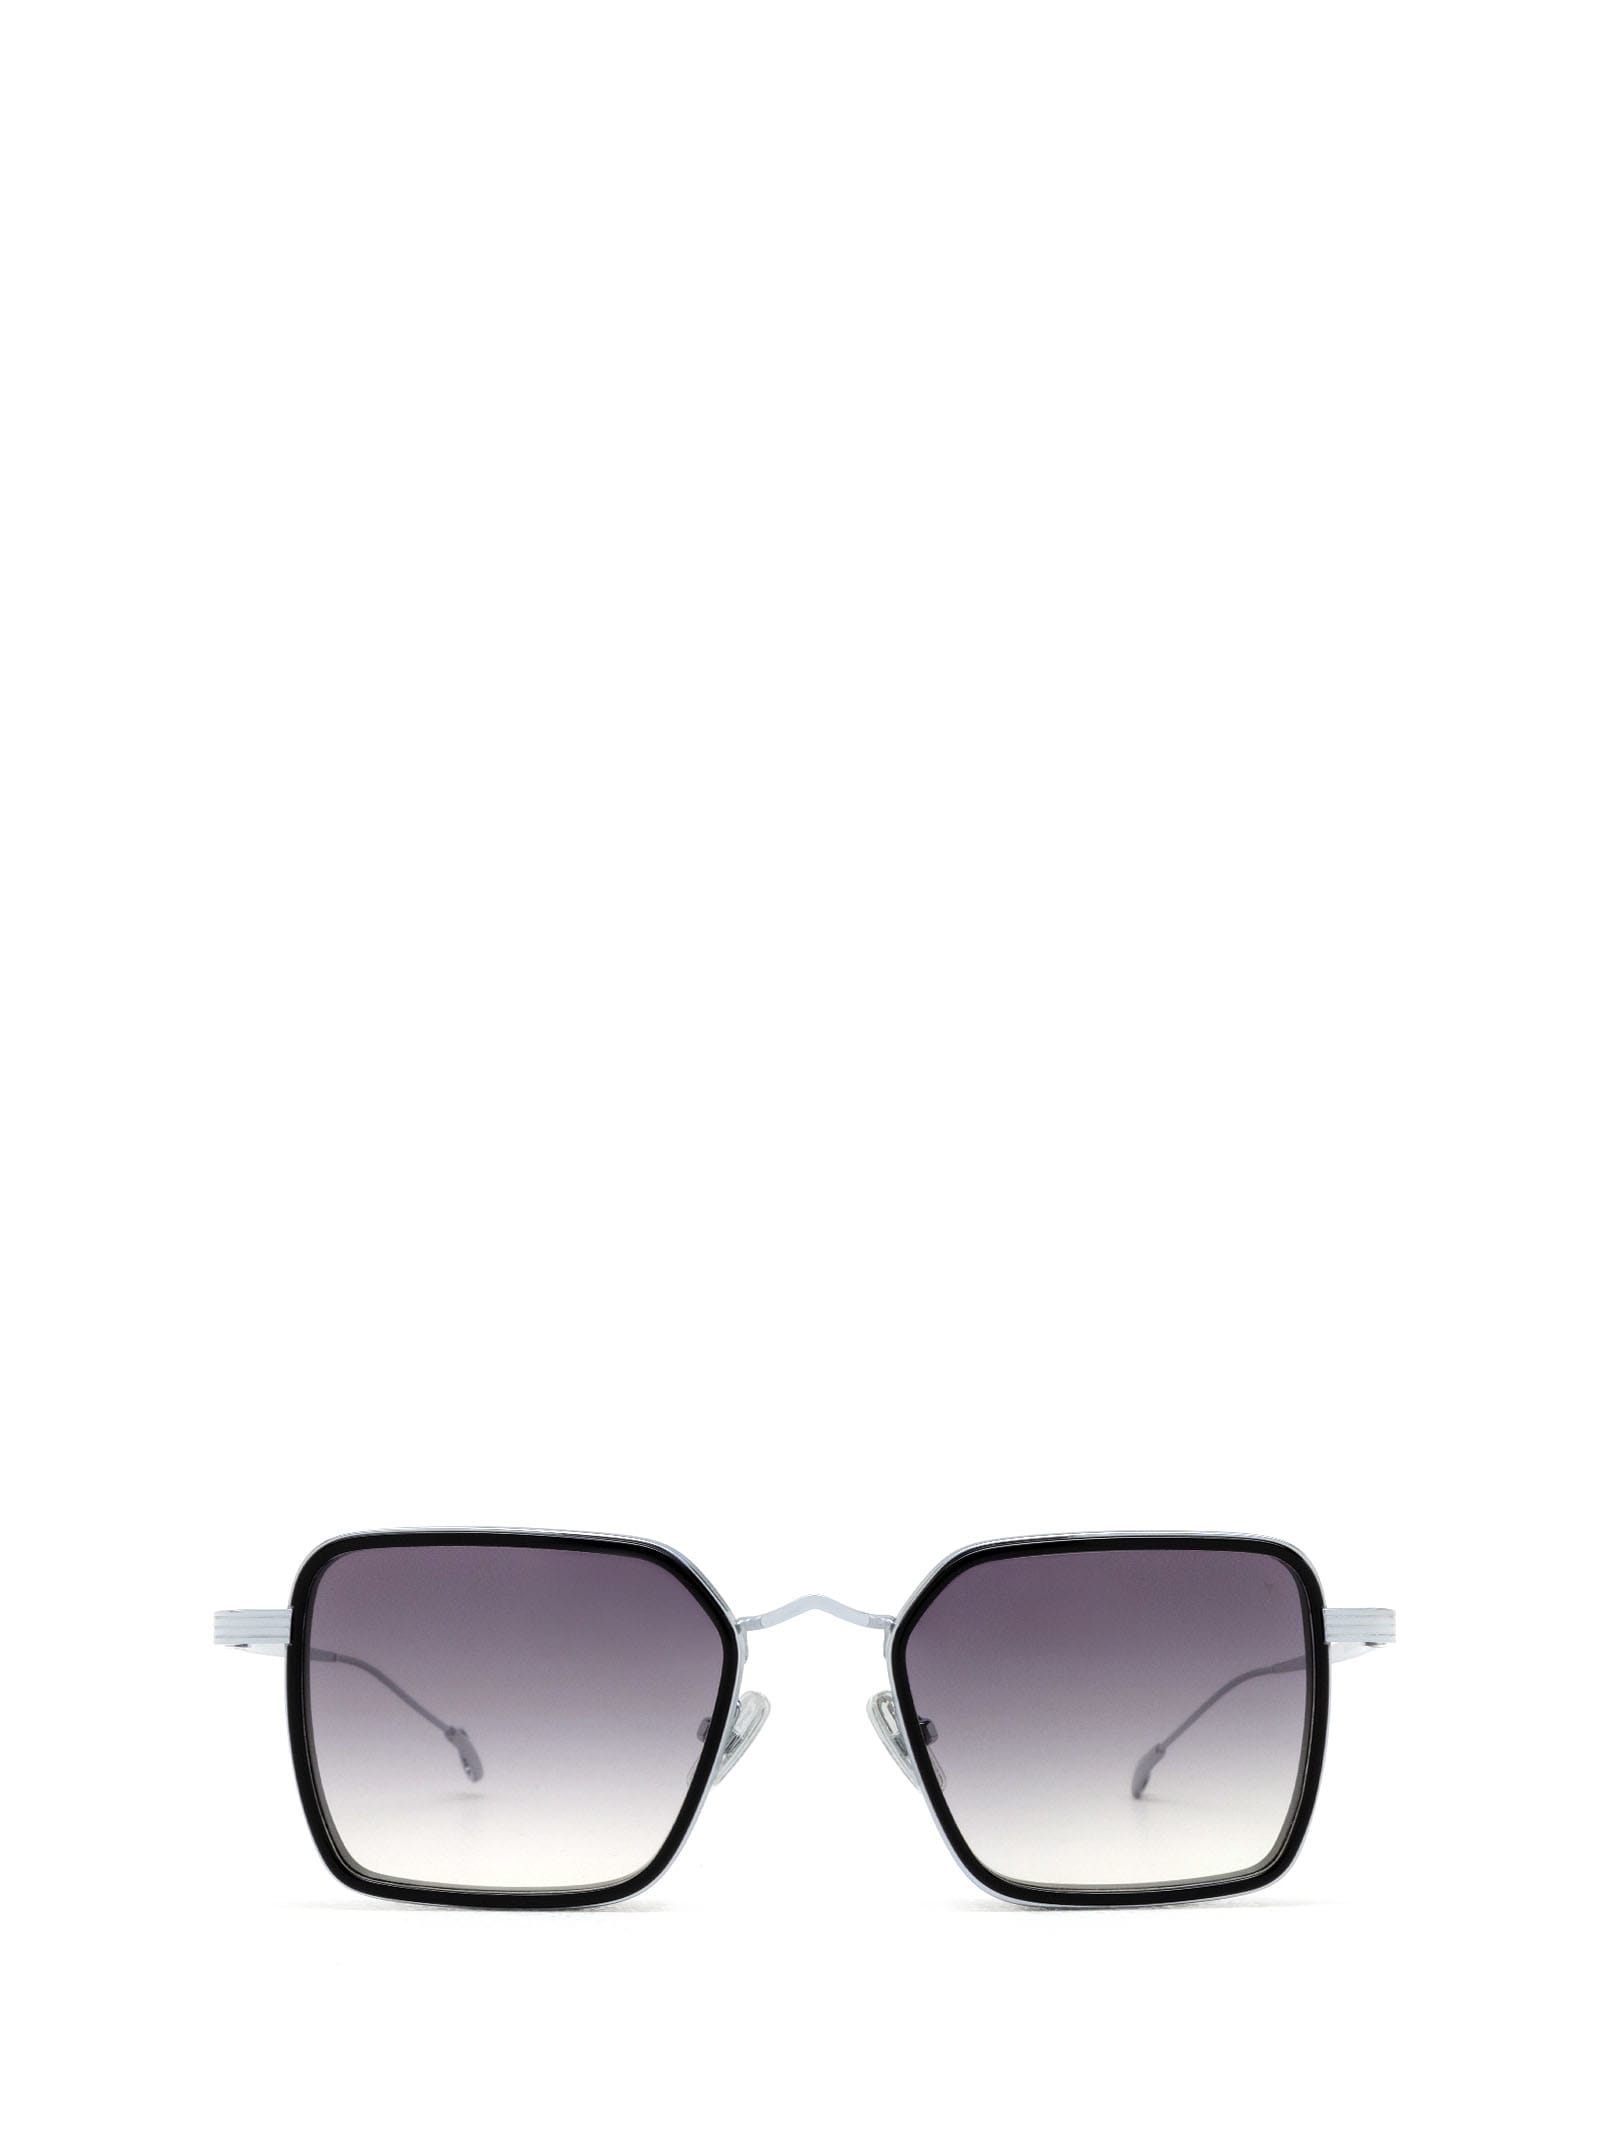 Shop Eyepetizer Nomad Black Sunglasses